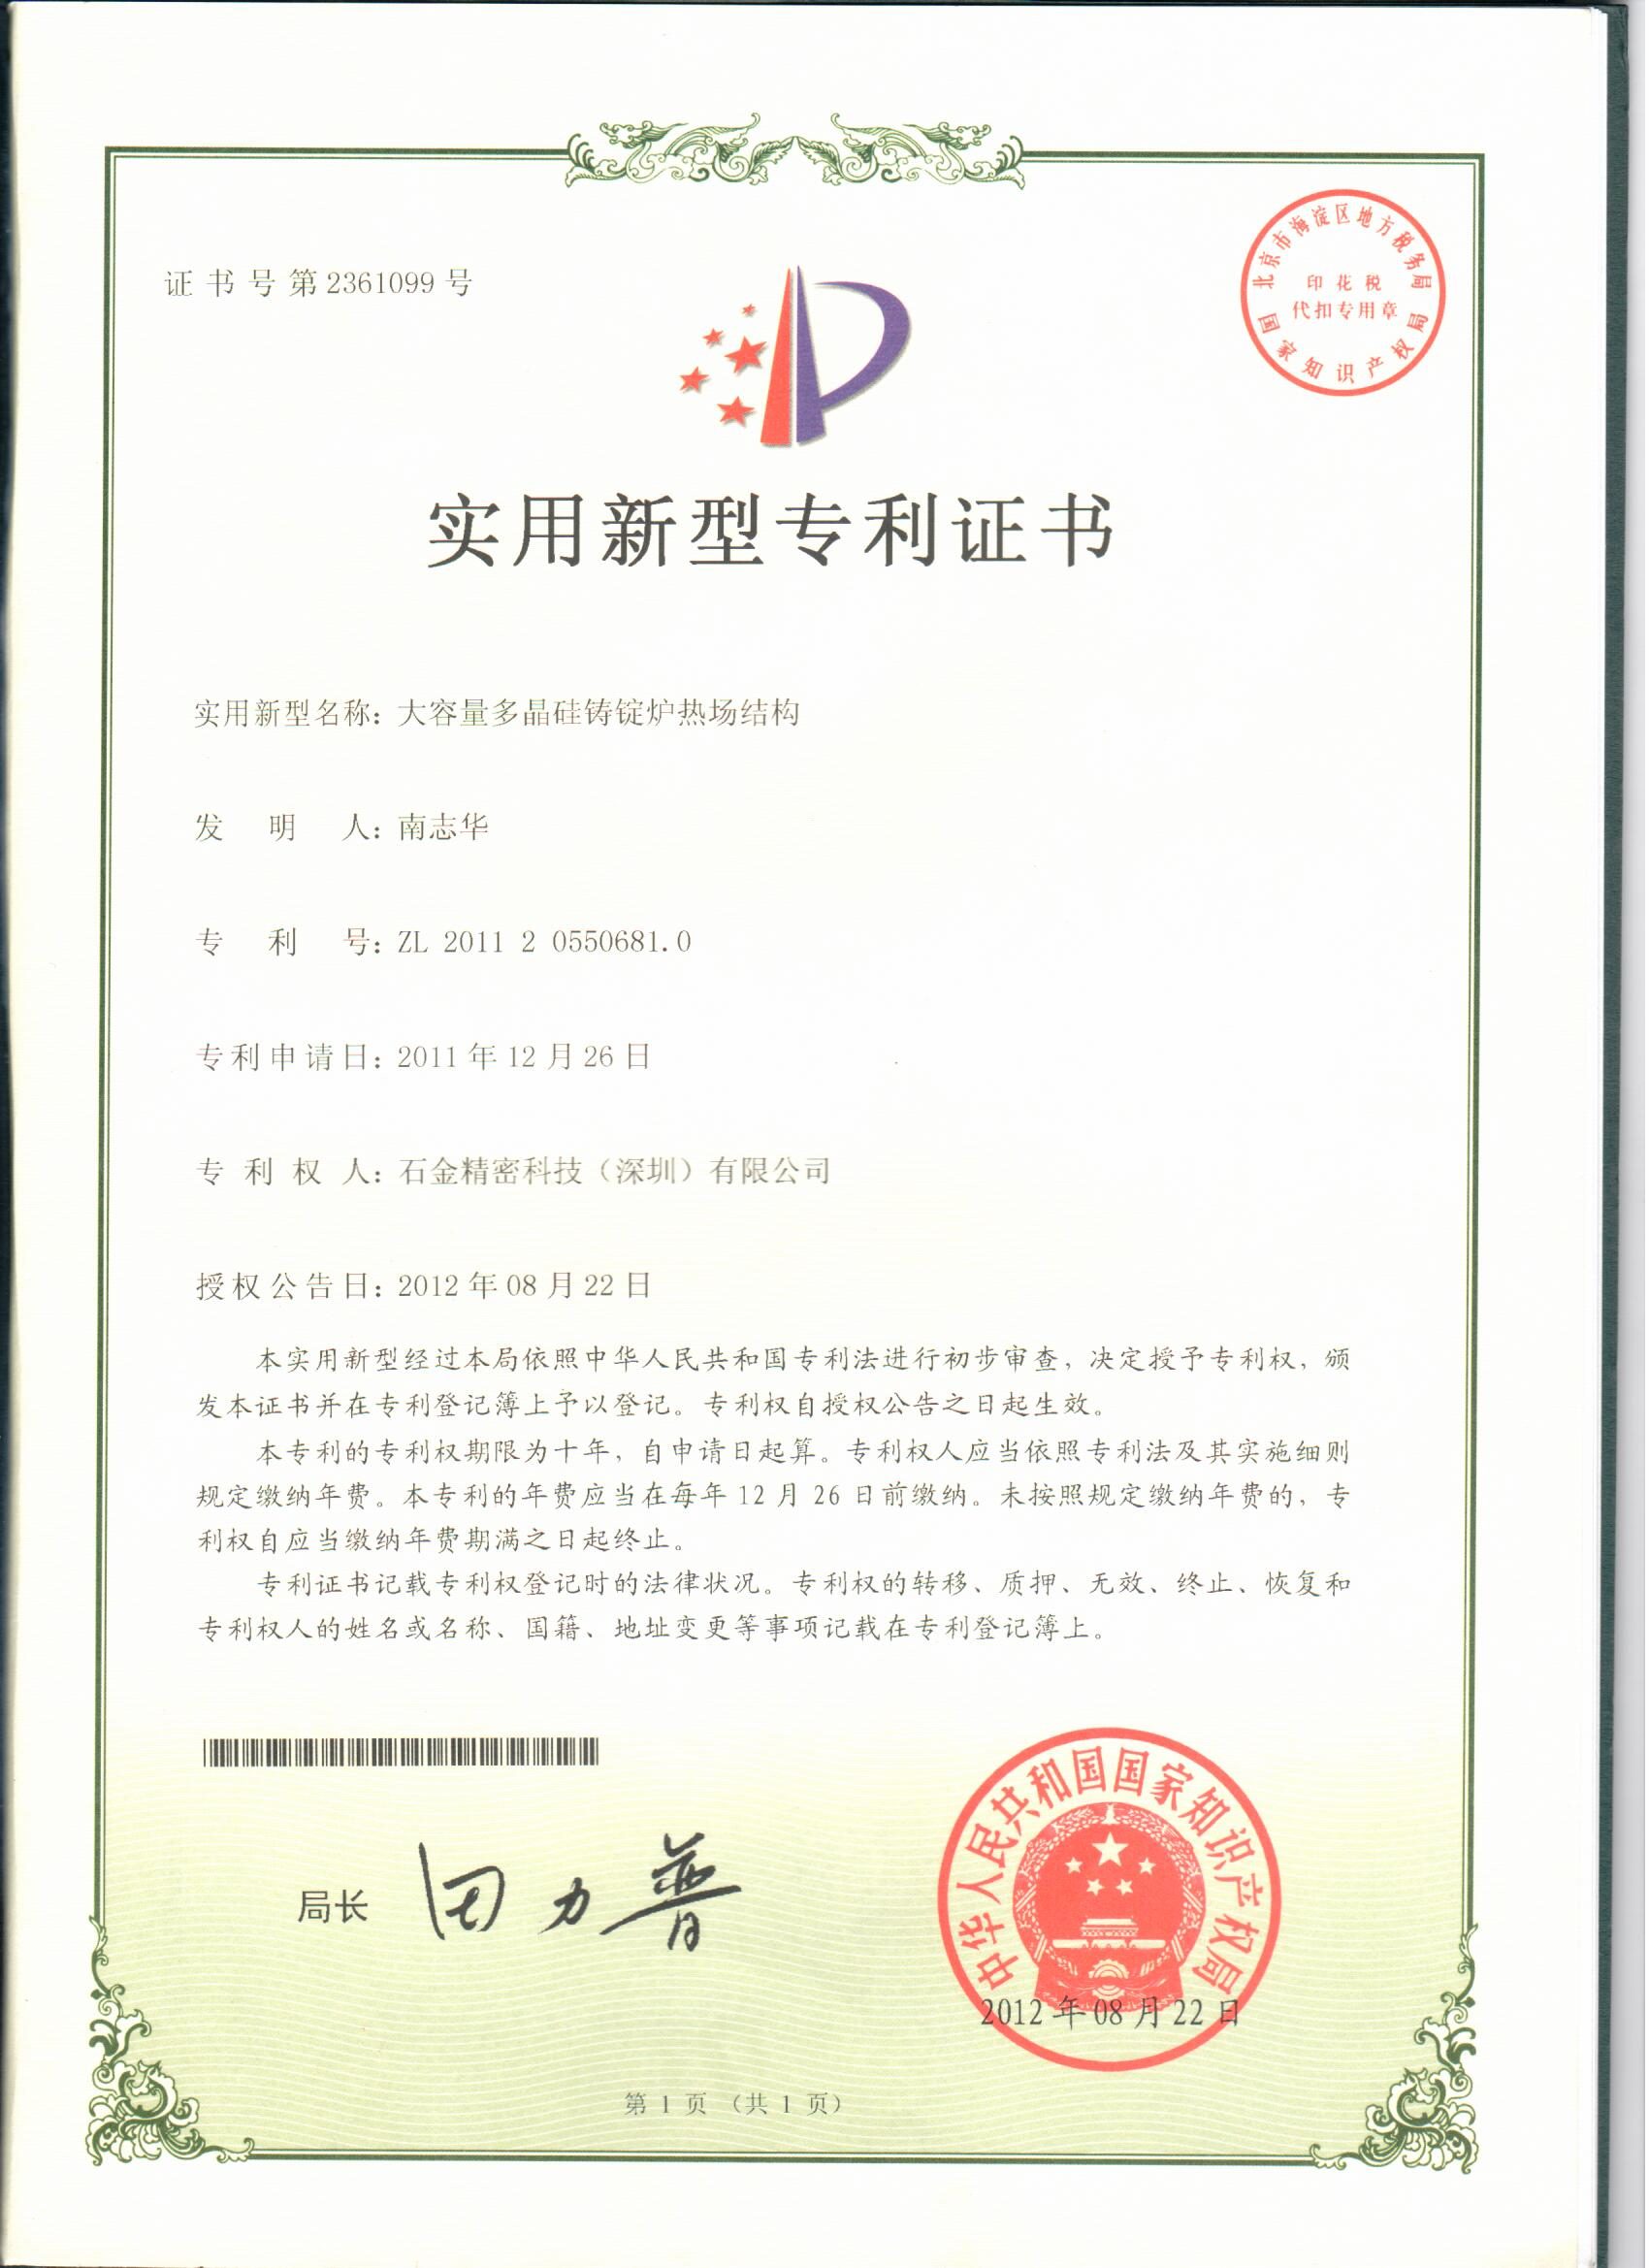 大容量多(duō)晶硅铸锭炉热场结构证书